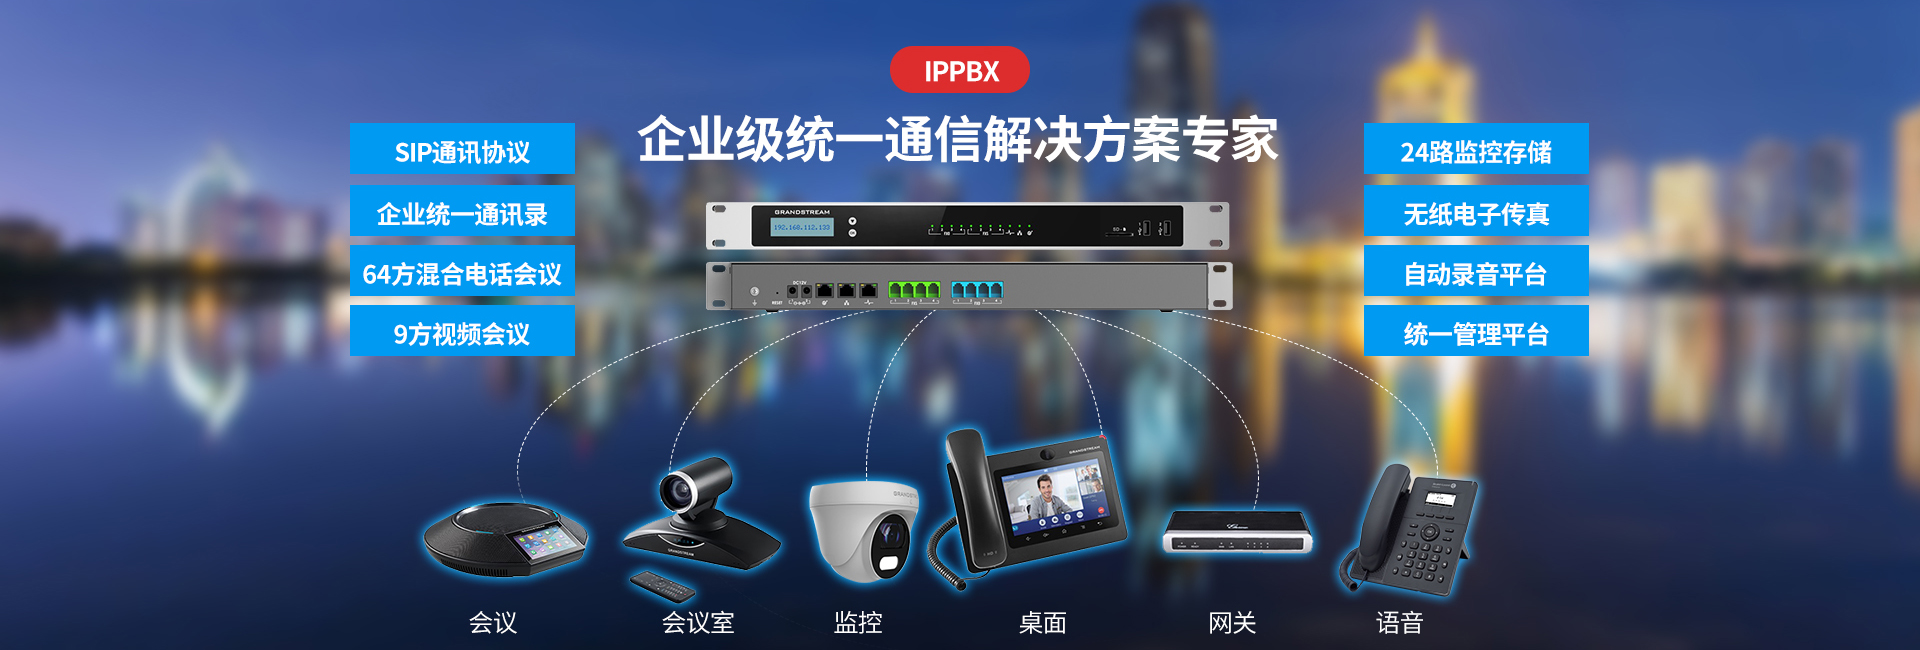 潮流网络-电话交换机IPPBX-UCM6301